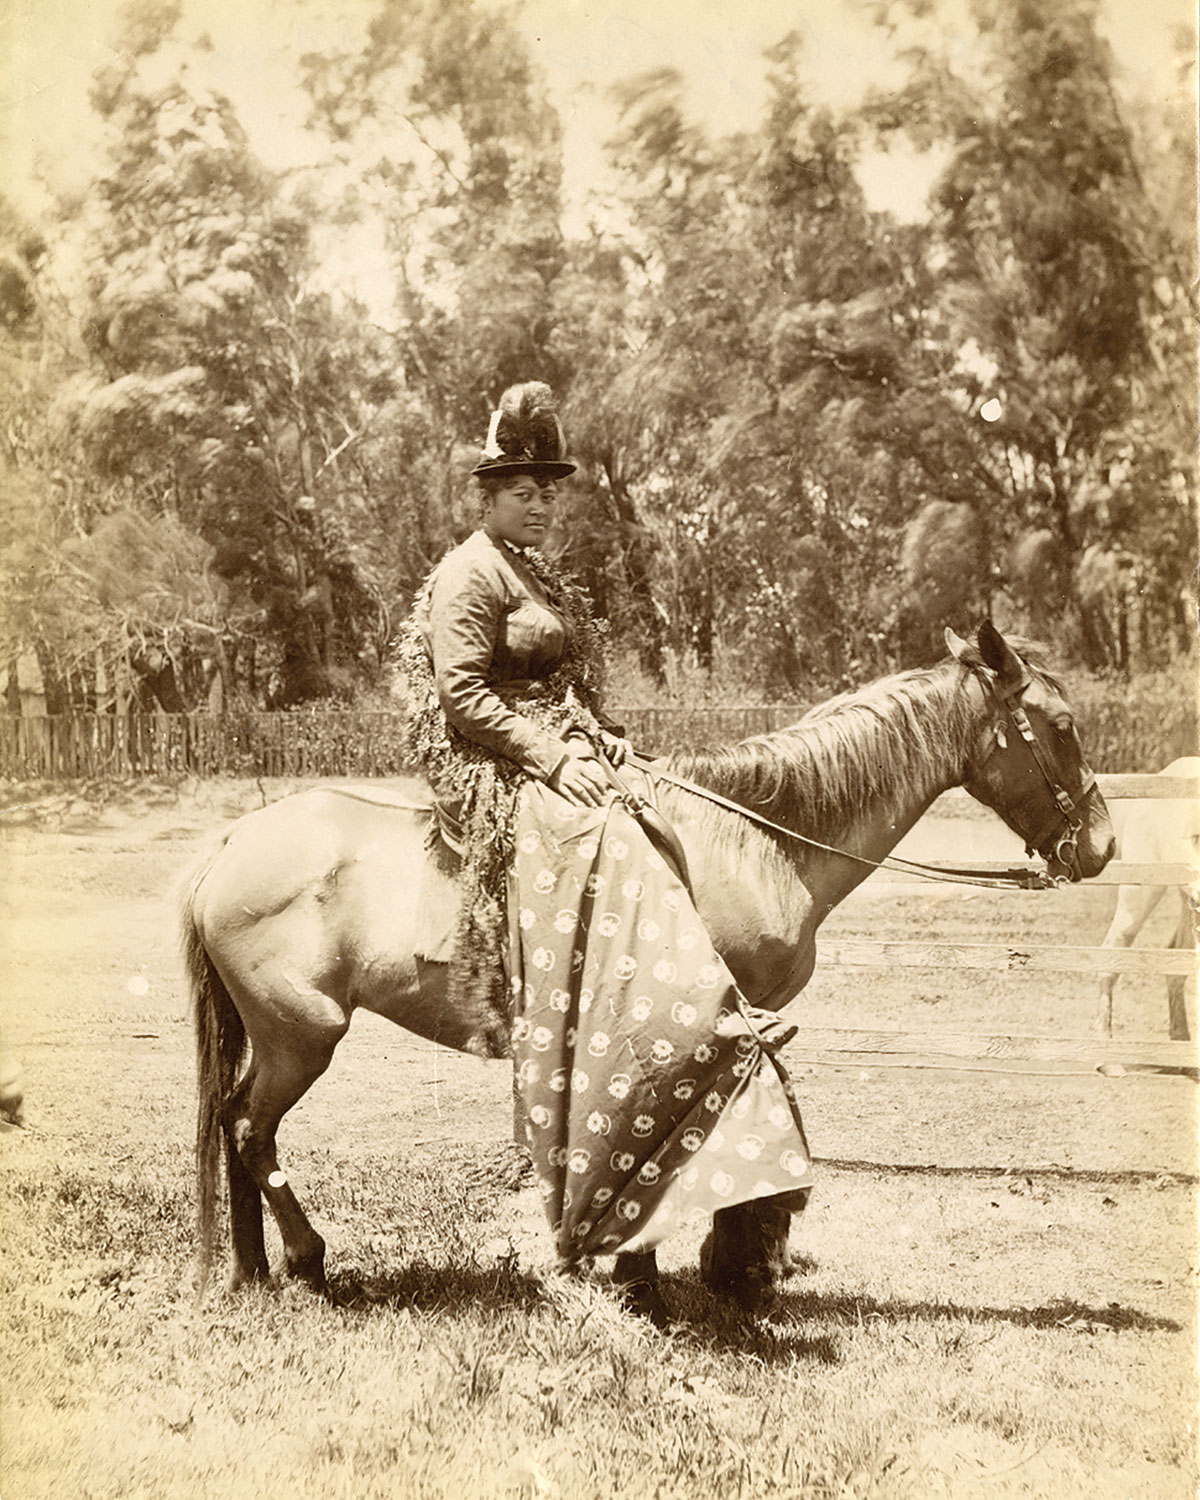 Pāʻū Rider, c. 1980.